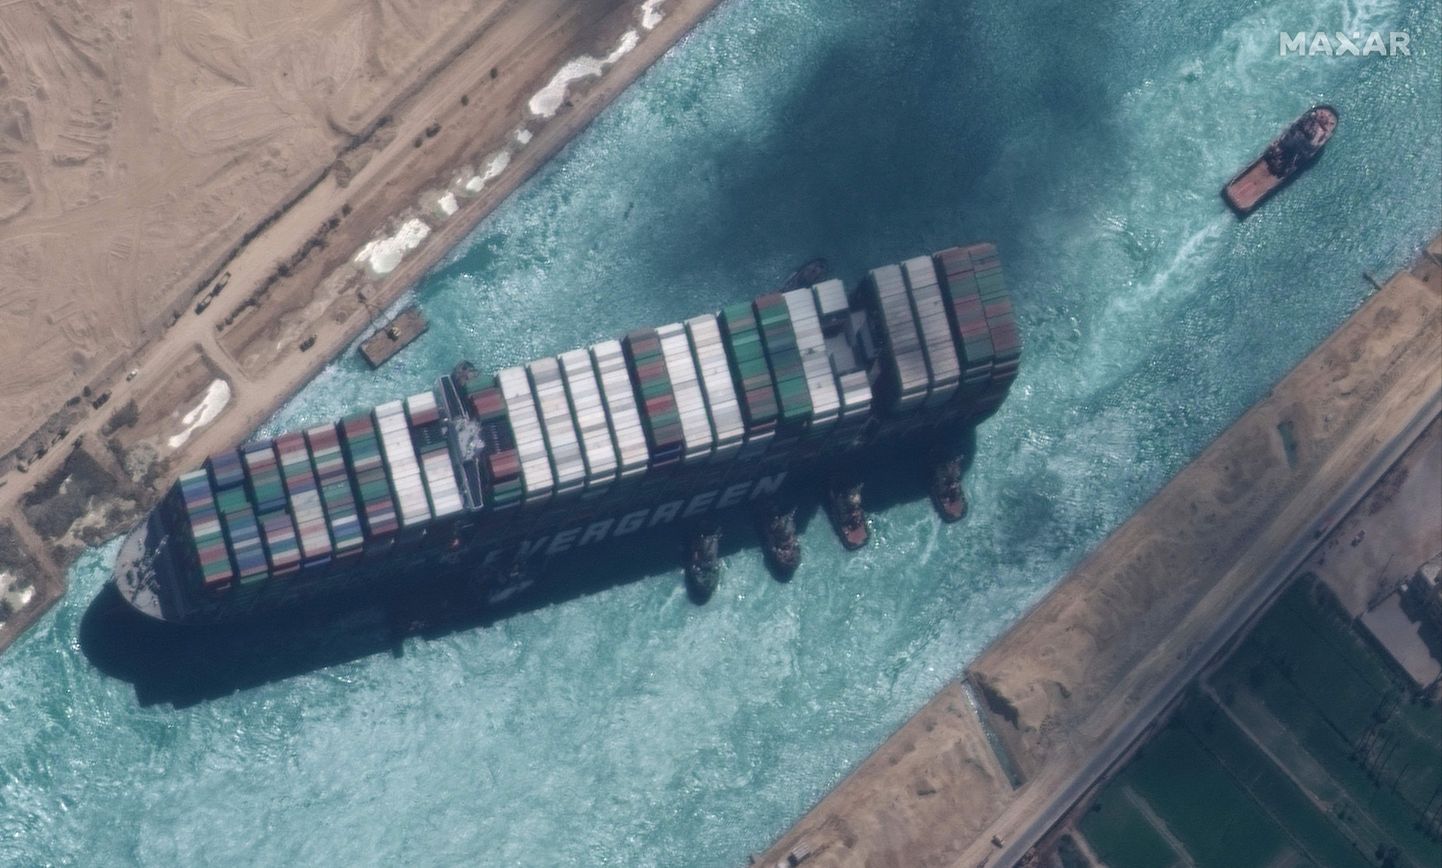 Maxar Technologies staelliidifoto 28. märtsist, mil konteinerlaev Ever Given blokeeris veel Suessi kanalit. Nüüdseks on kahjunõuded jõudnud ka Baltikumi kindlustusettevõteteni.